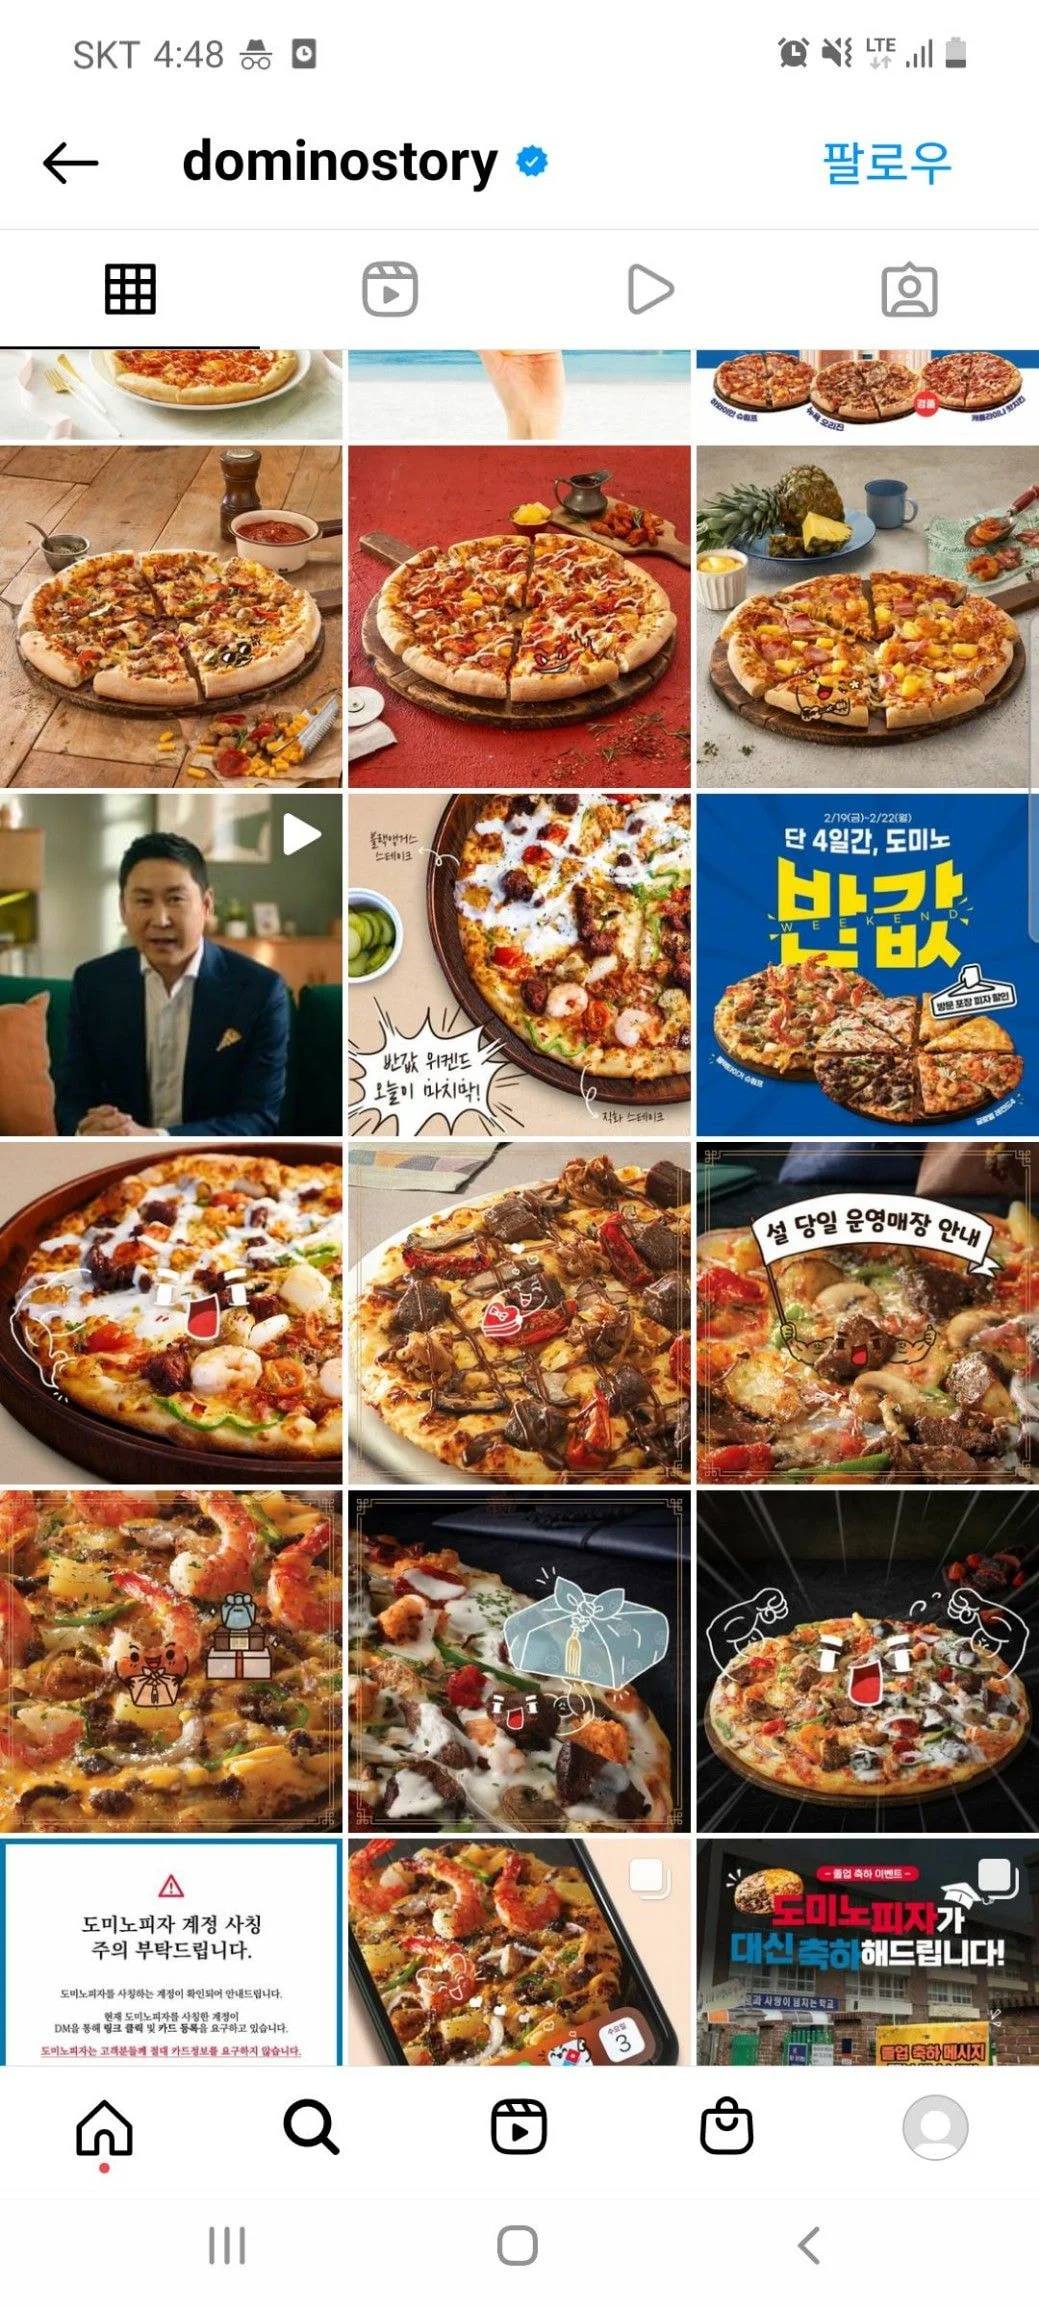 Trang Instagram hiện tại của Domino đã ẩn hết toàn bộ ảnh của Kim Seon Ho